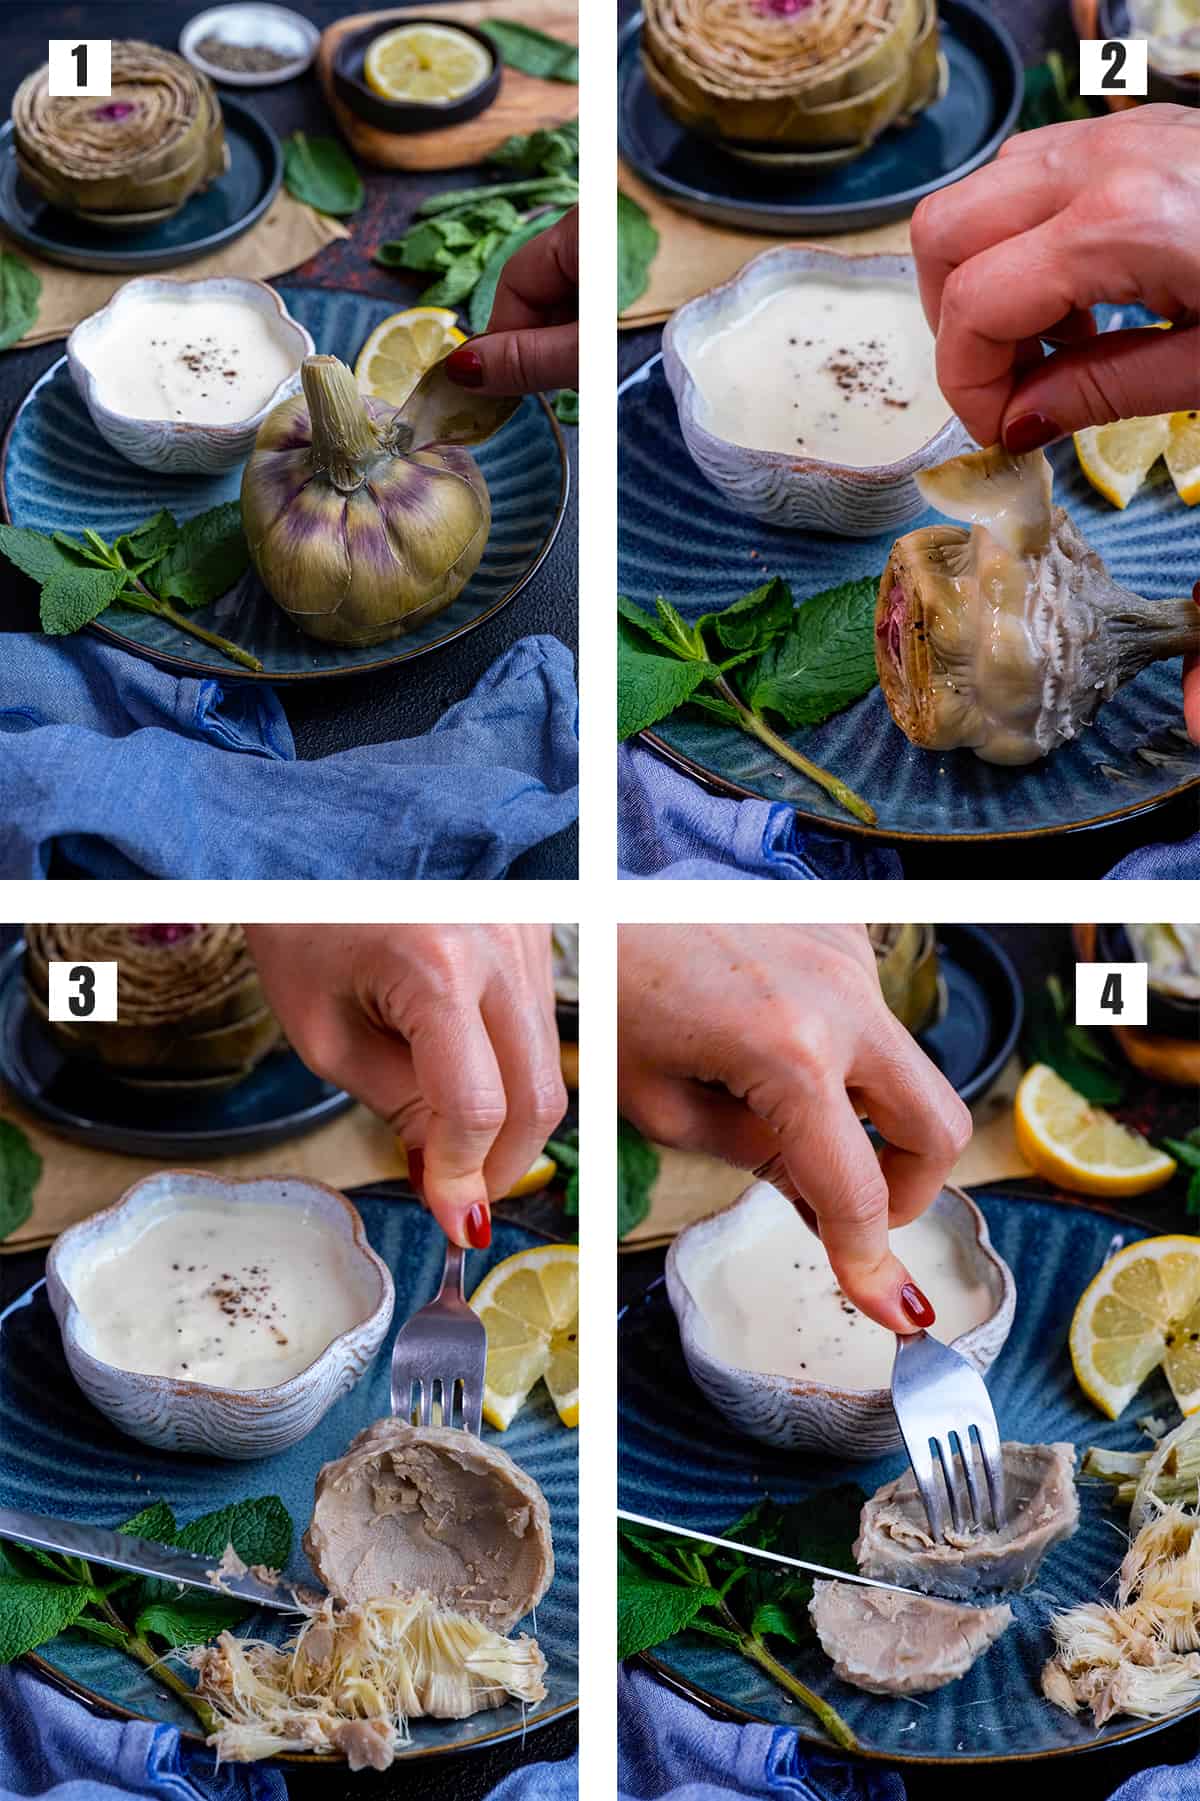 由四张图片组成的拼贴图，展示了如何从煮熟的朝鲜蓟中拔出叶子，如何去除朝鲜蓟的咽喉，以及如何吃掉中间的心脏。